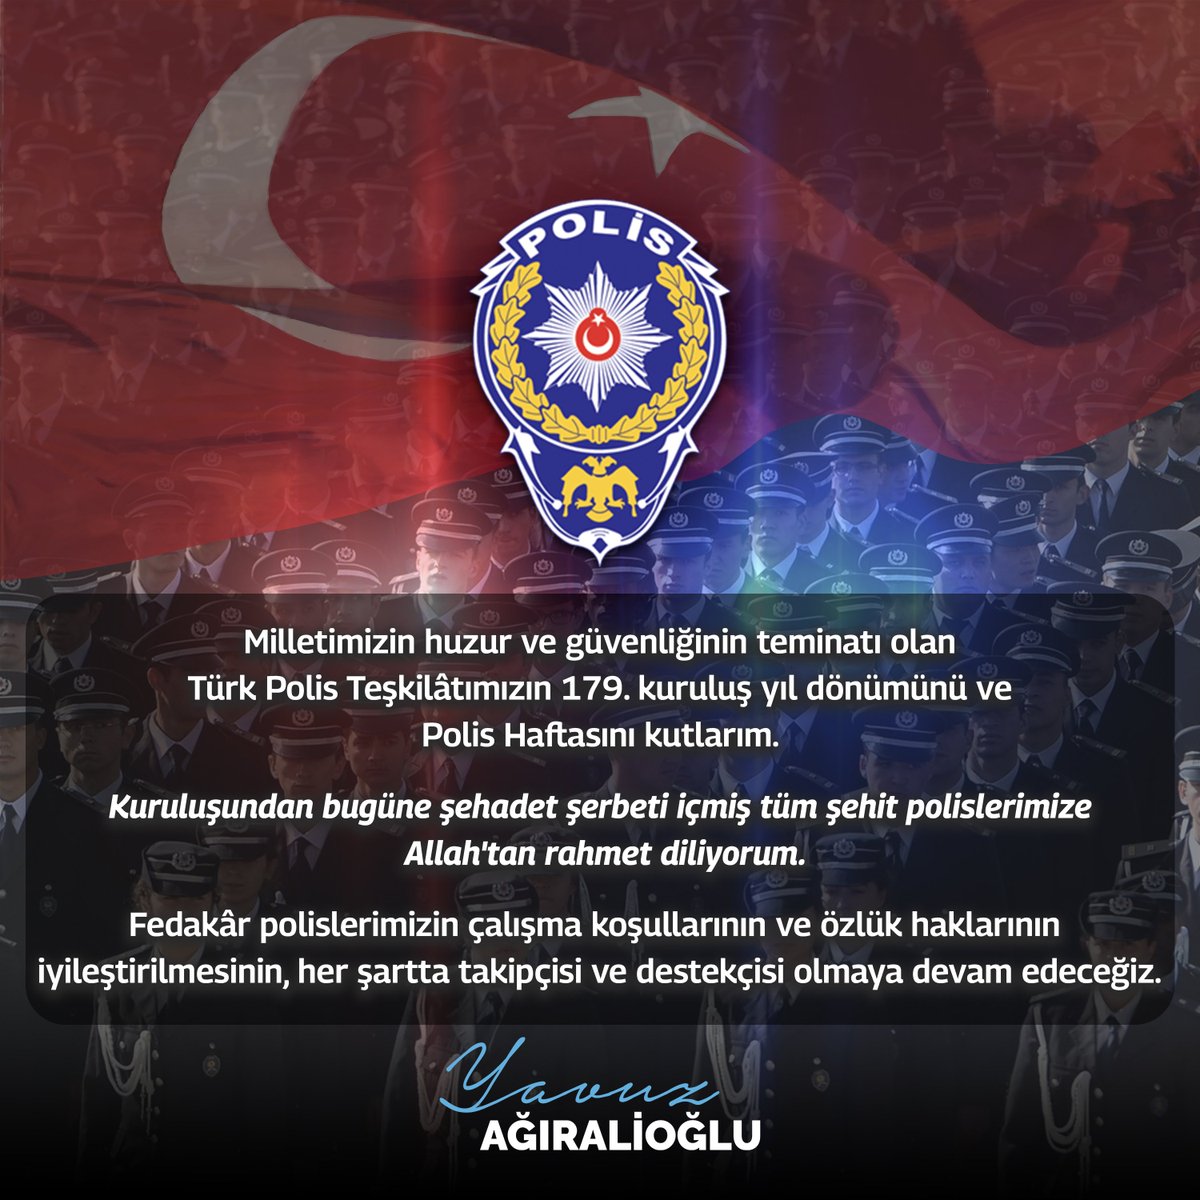 Milletimizin huzur ve güvenliğinin teminatı olan Türk Polis Teşkilâtımızın 179. kuruluş yıl dönümünü ve #PolisHaftası'nı kutlarım.

Kuruluşundan bugüne şehadet şerbeti içmiş tüm şehit polislerimize Allah'tan rahmet diliyorum.

Fedakâr polislerimizin çalışma koşullarının ve özlük…